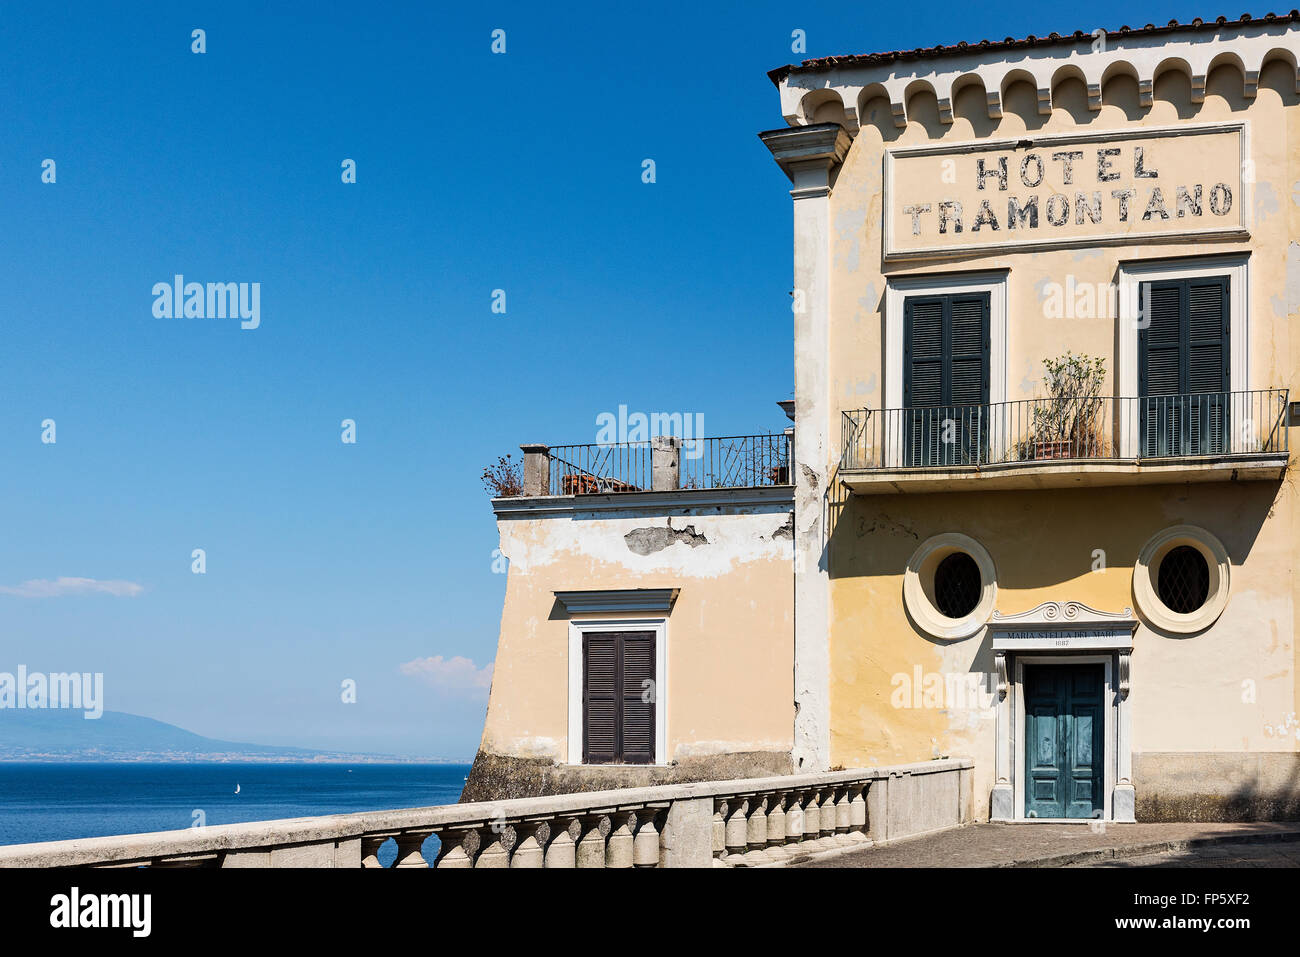 Hotel Tramontano, Sorrento, Italy Stock Photo